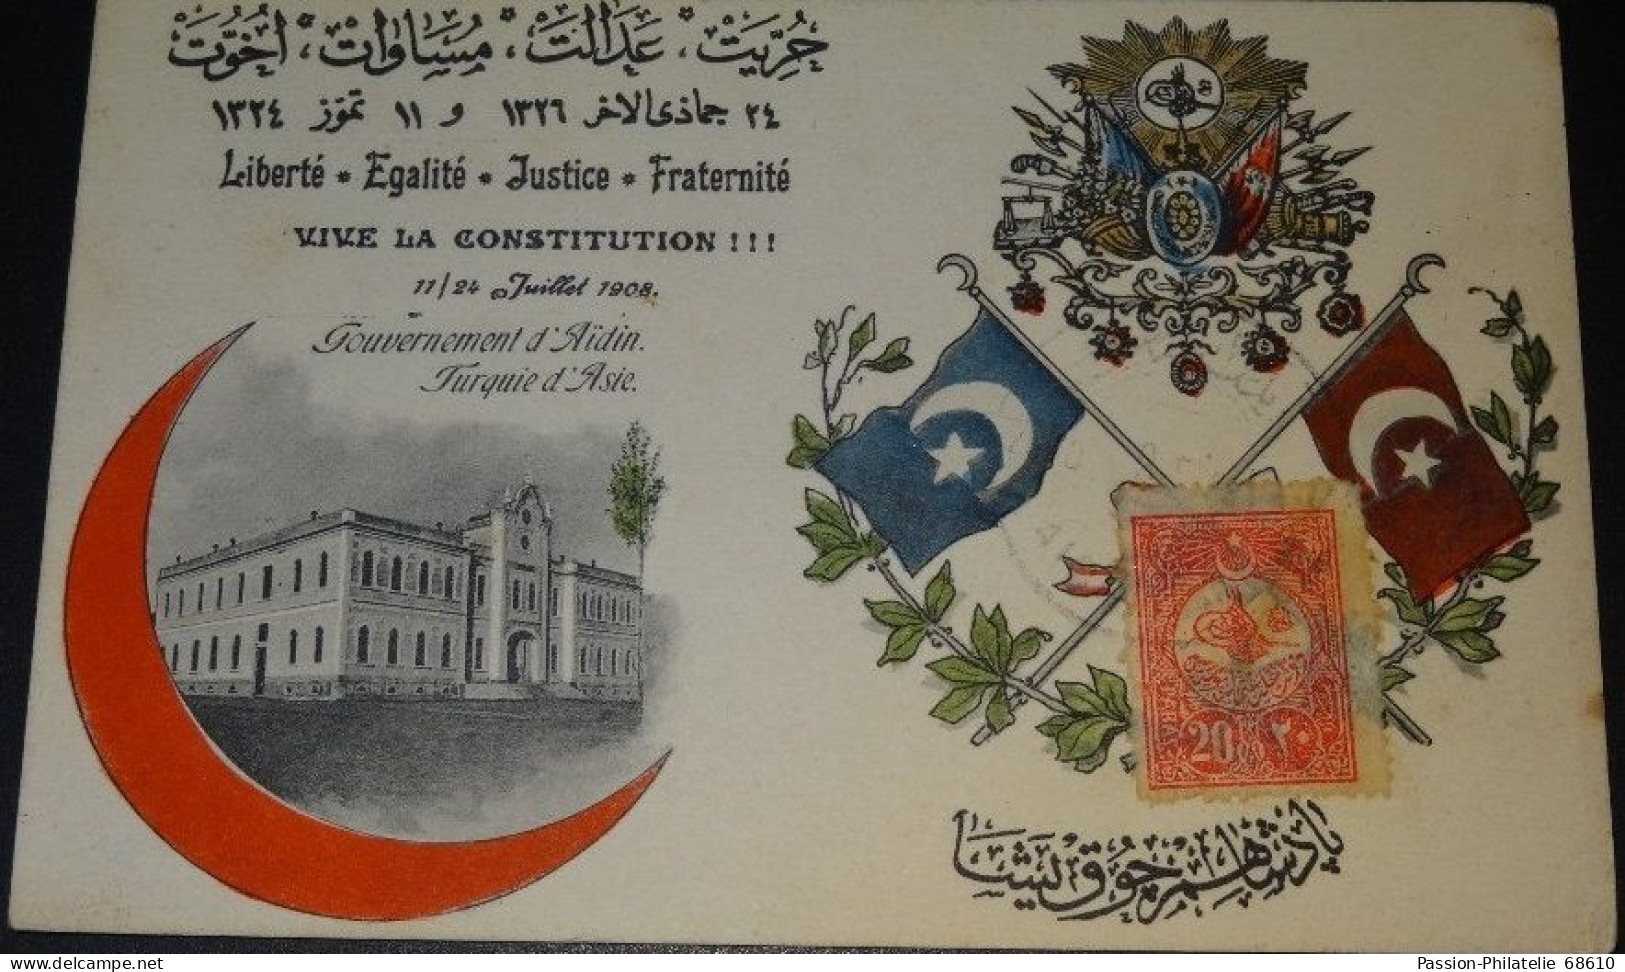 CPA - VIVE LA CONSTITUTION ! - GOUVERNEMENT D'AÏDIN TURQUIE D'ASIE - 1909 Circulated - Turkey